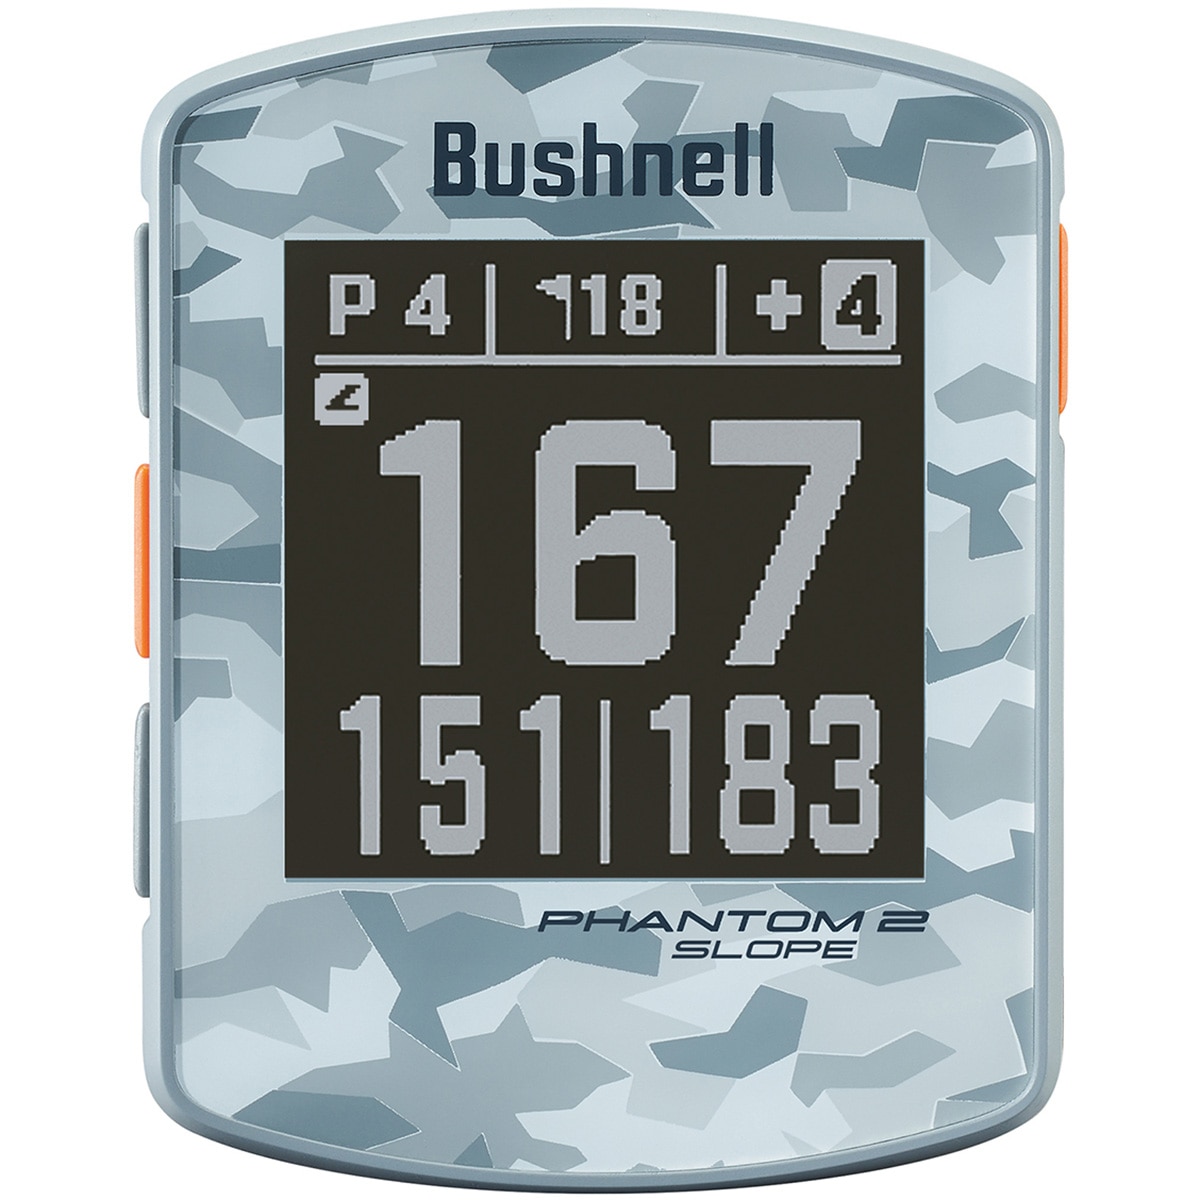 ファントム2 スロープ(距離測定器)|Bushnell(ブッシュネル)の通販